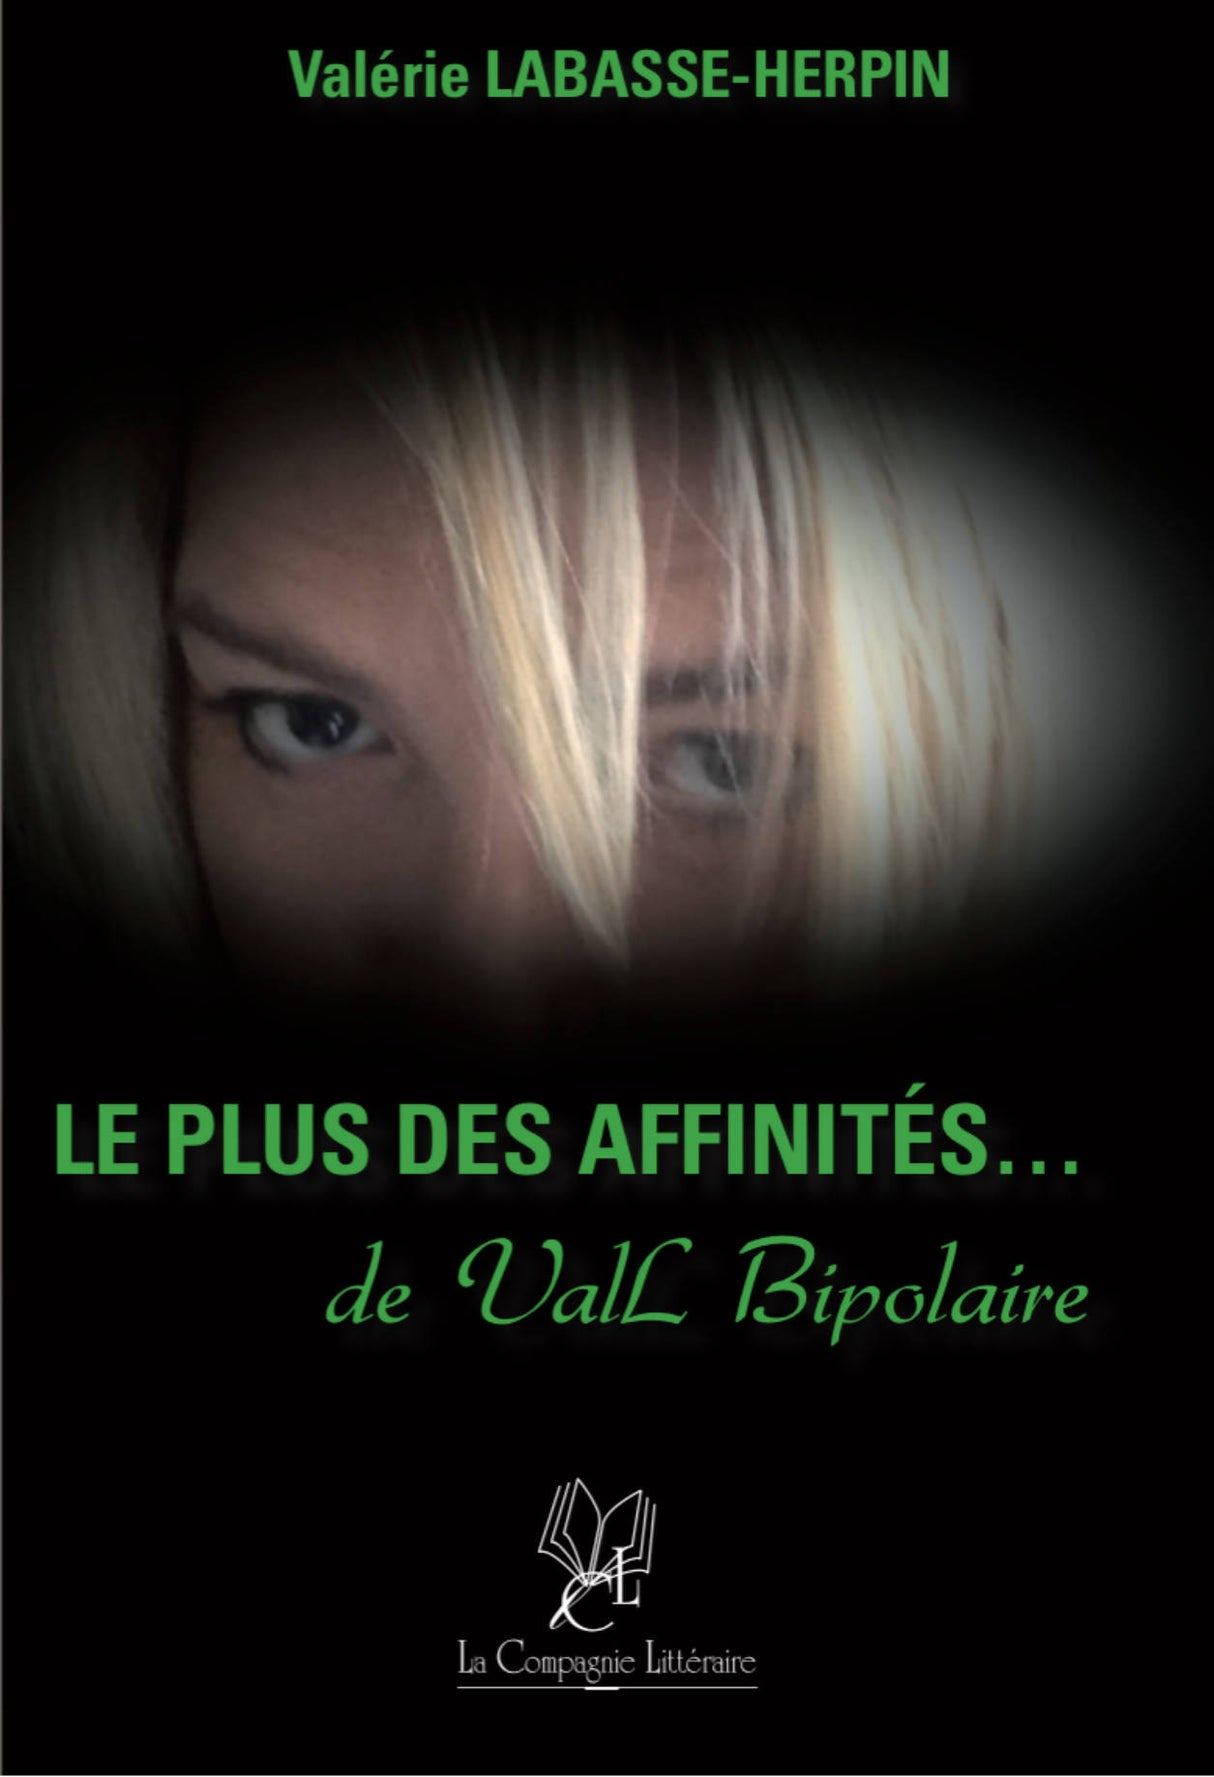 LE PLUS DES AFFINITES de Val Bipolaire - Valérie Labasse-Herpin